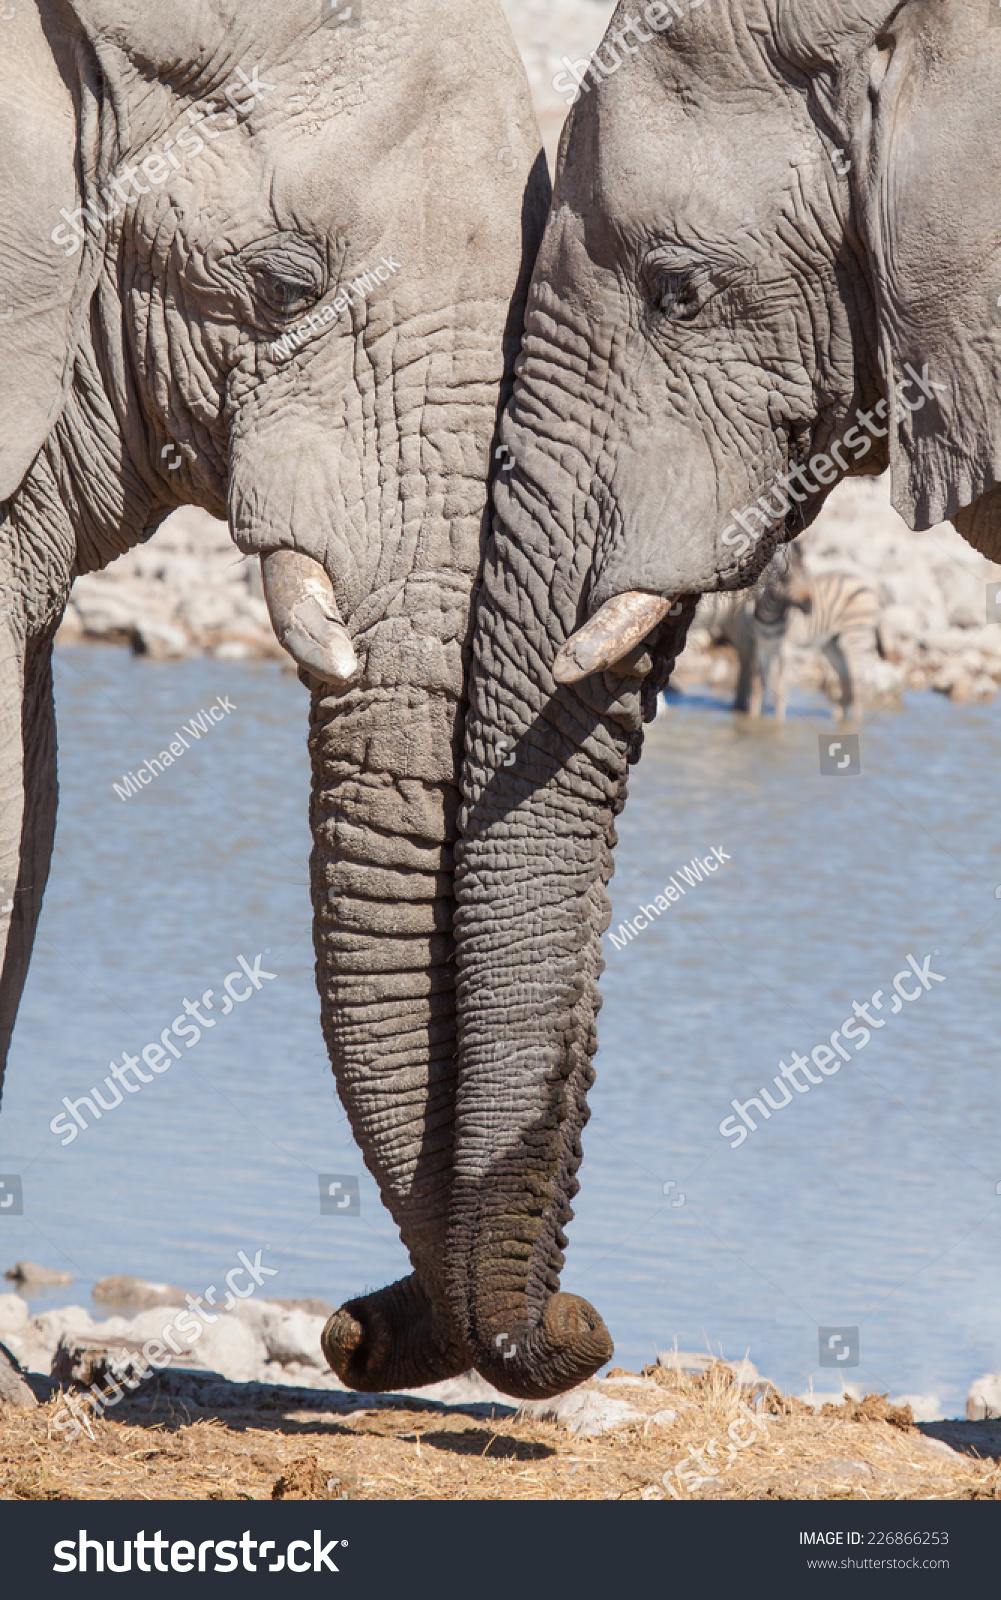 两只灰色的大象站在一起,温柔地抚摸着自己的